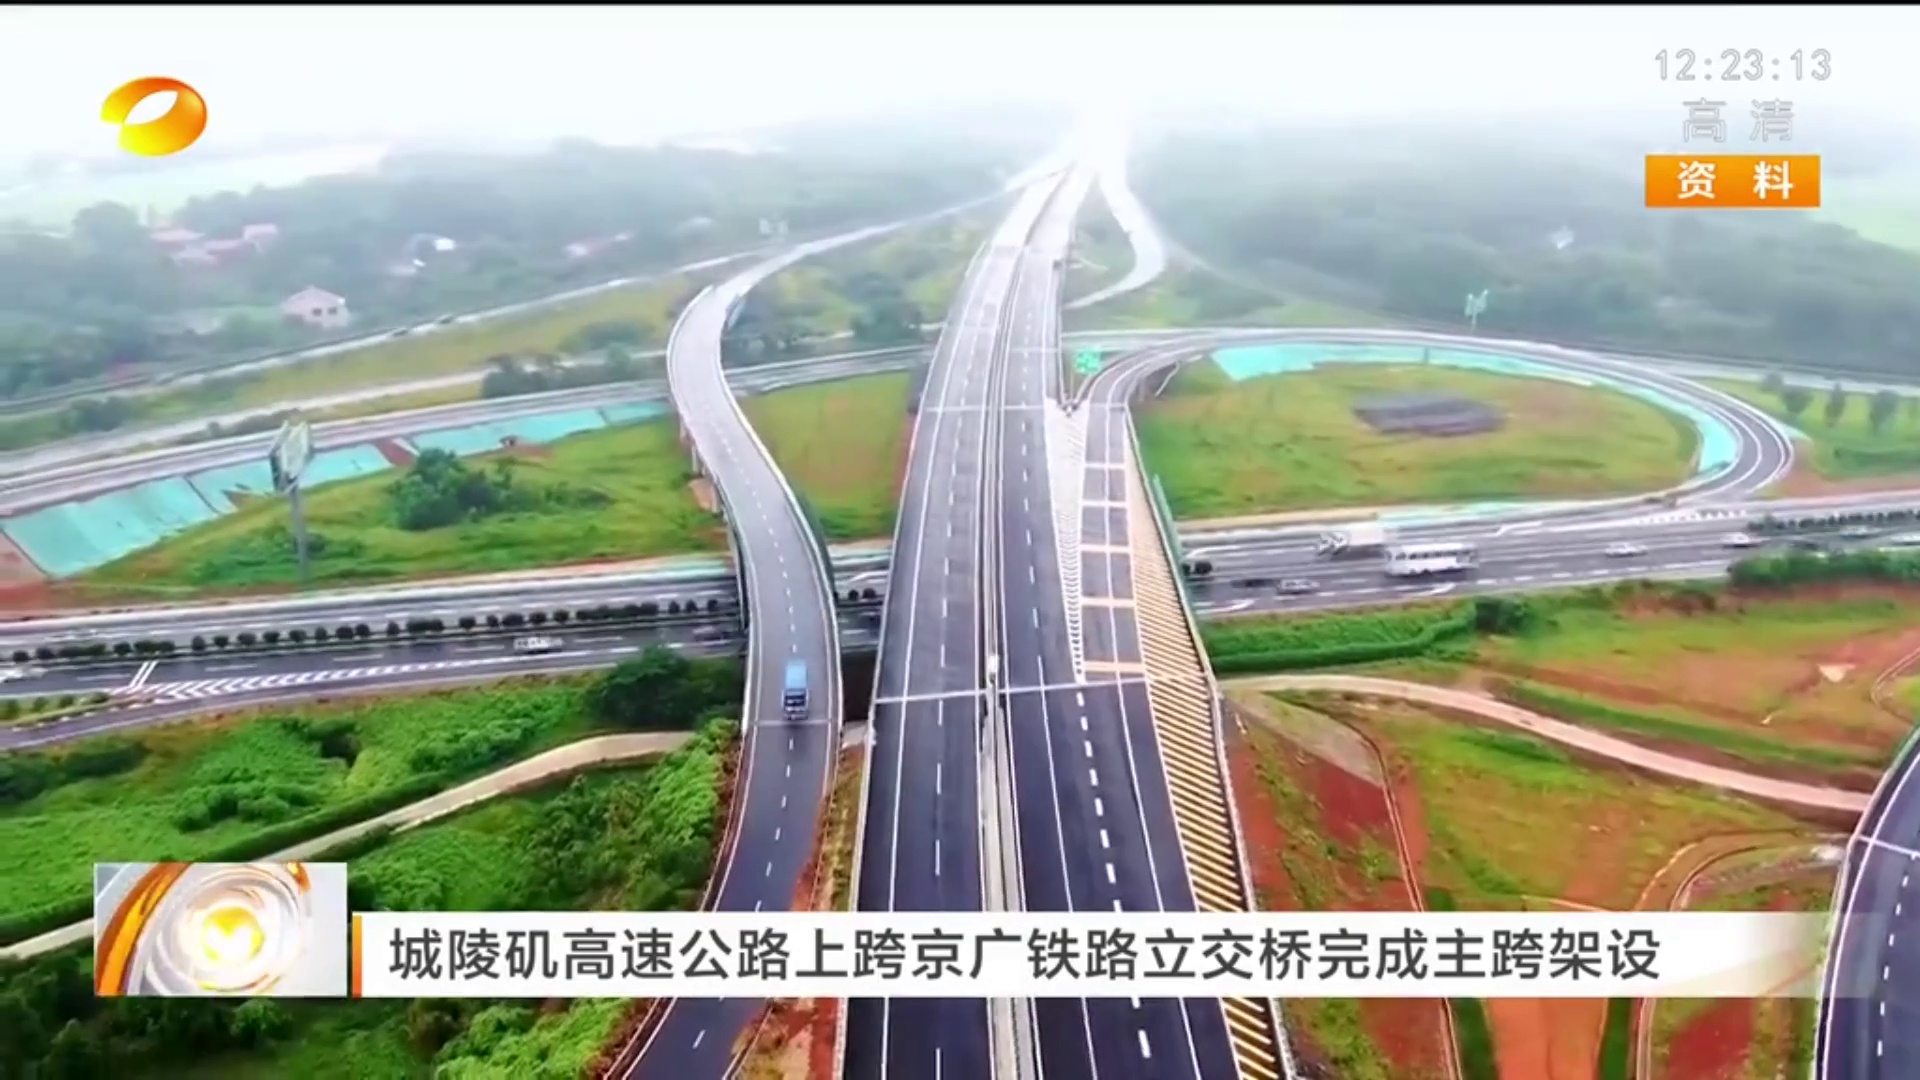 【湖南卫视】城陵矶高速公路上跨京广铁路立交桥完成主跨架设 